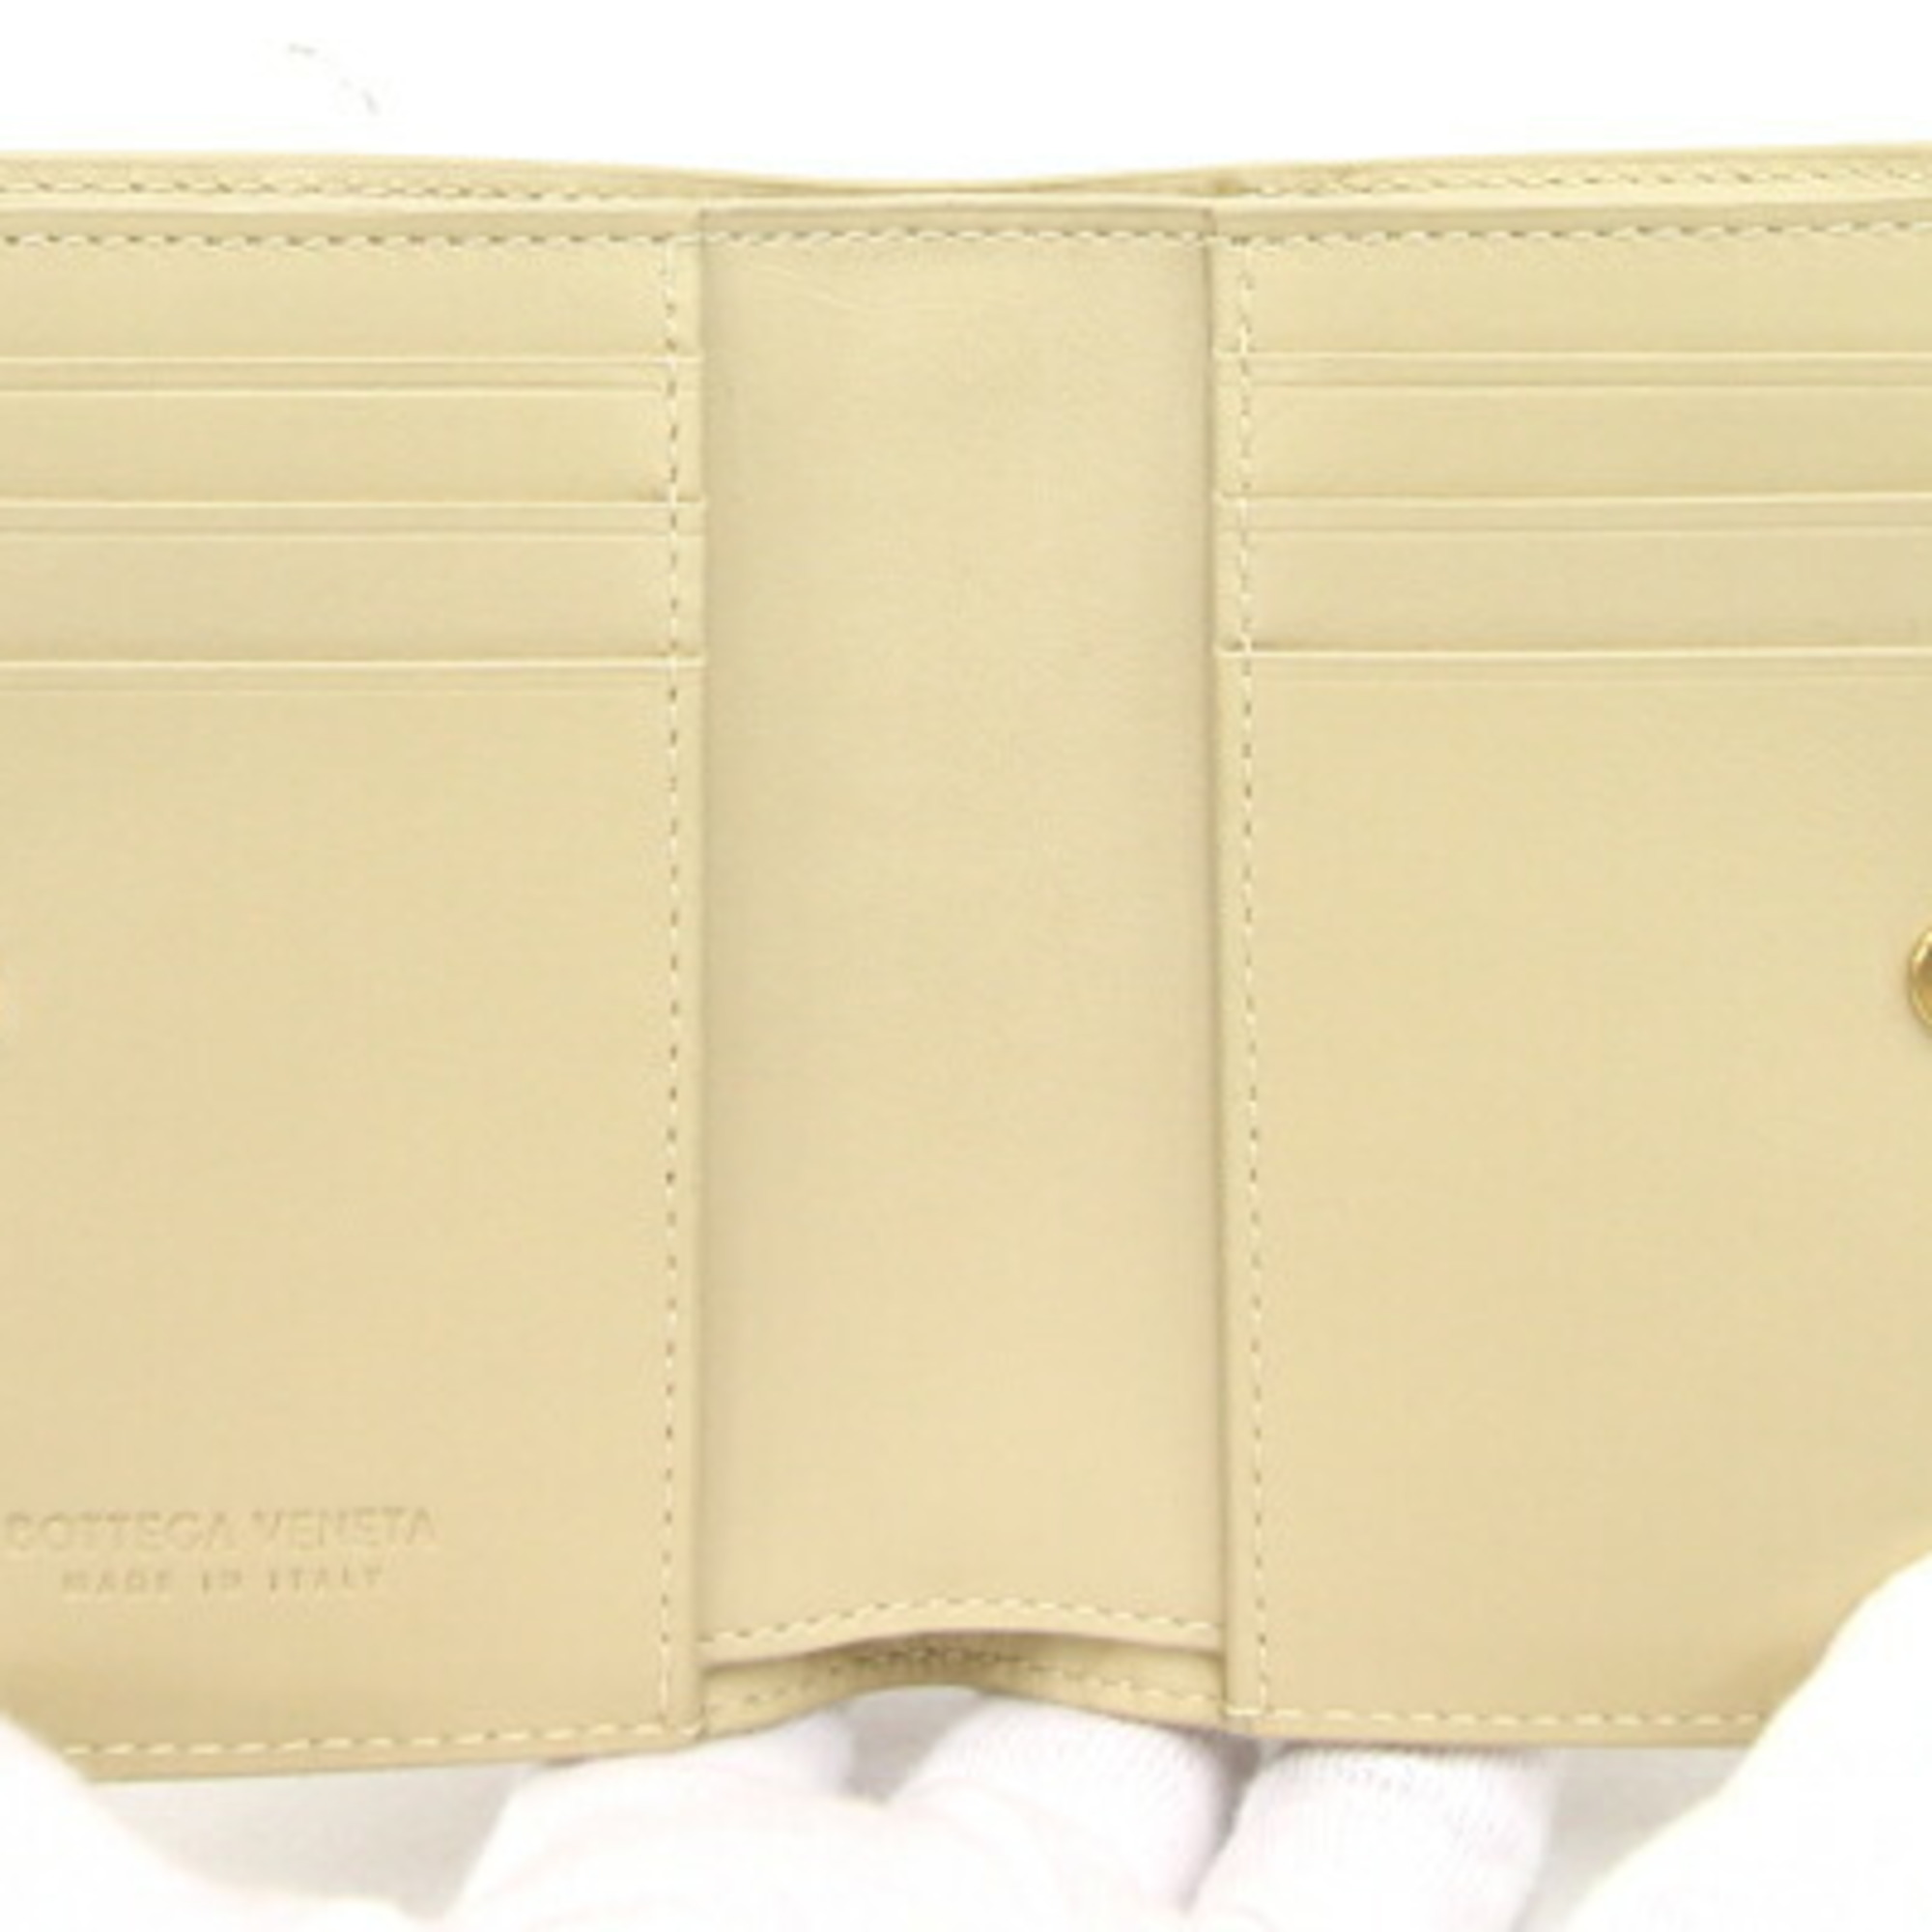 Bottega Veneta Bifold Long Wallet Intrecciato 707601 Beige Leather Compact Women's BOTTEGA VENETA